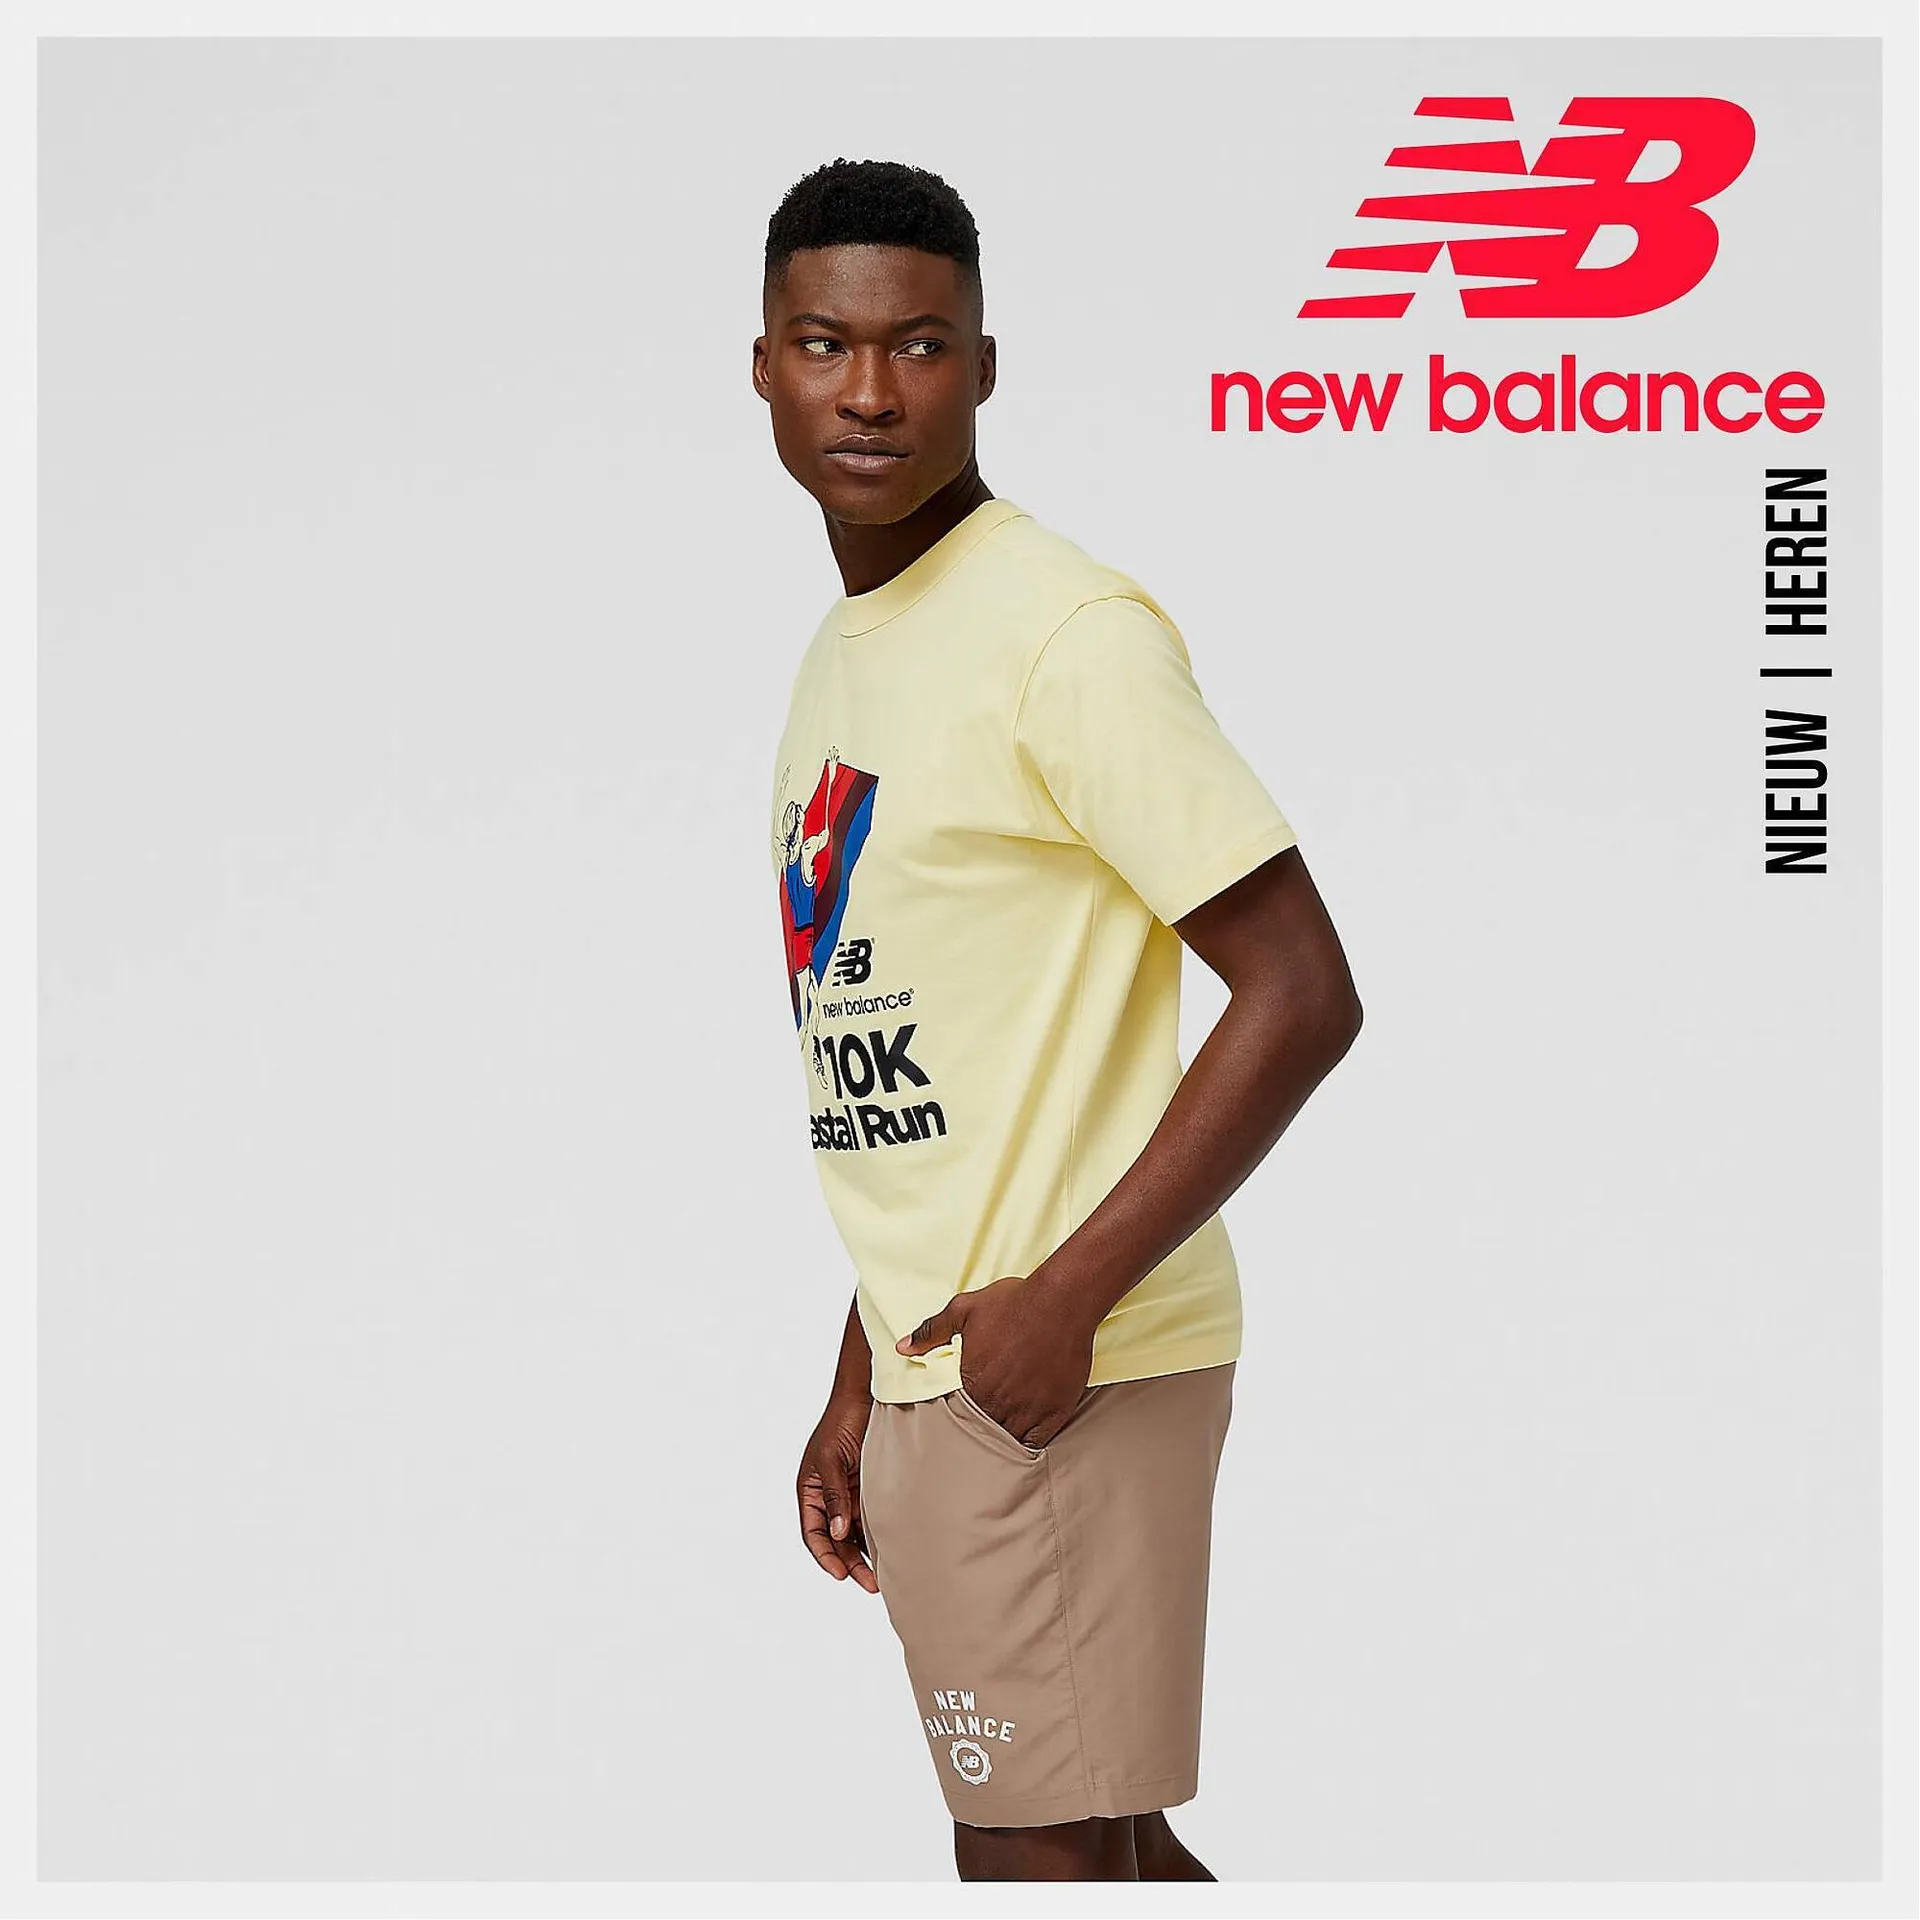 New Balance folder - 1